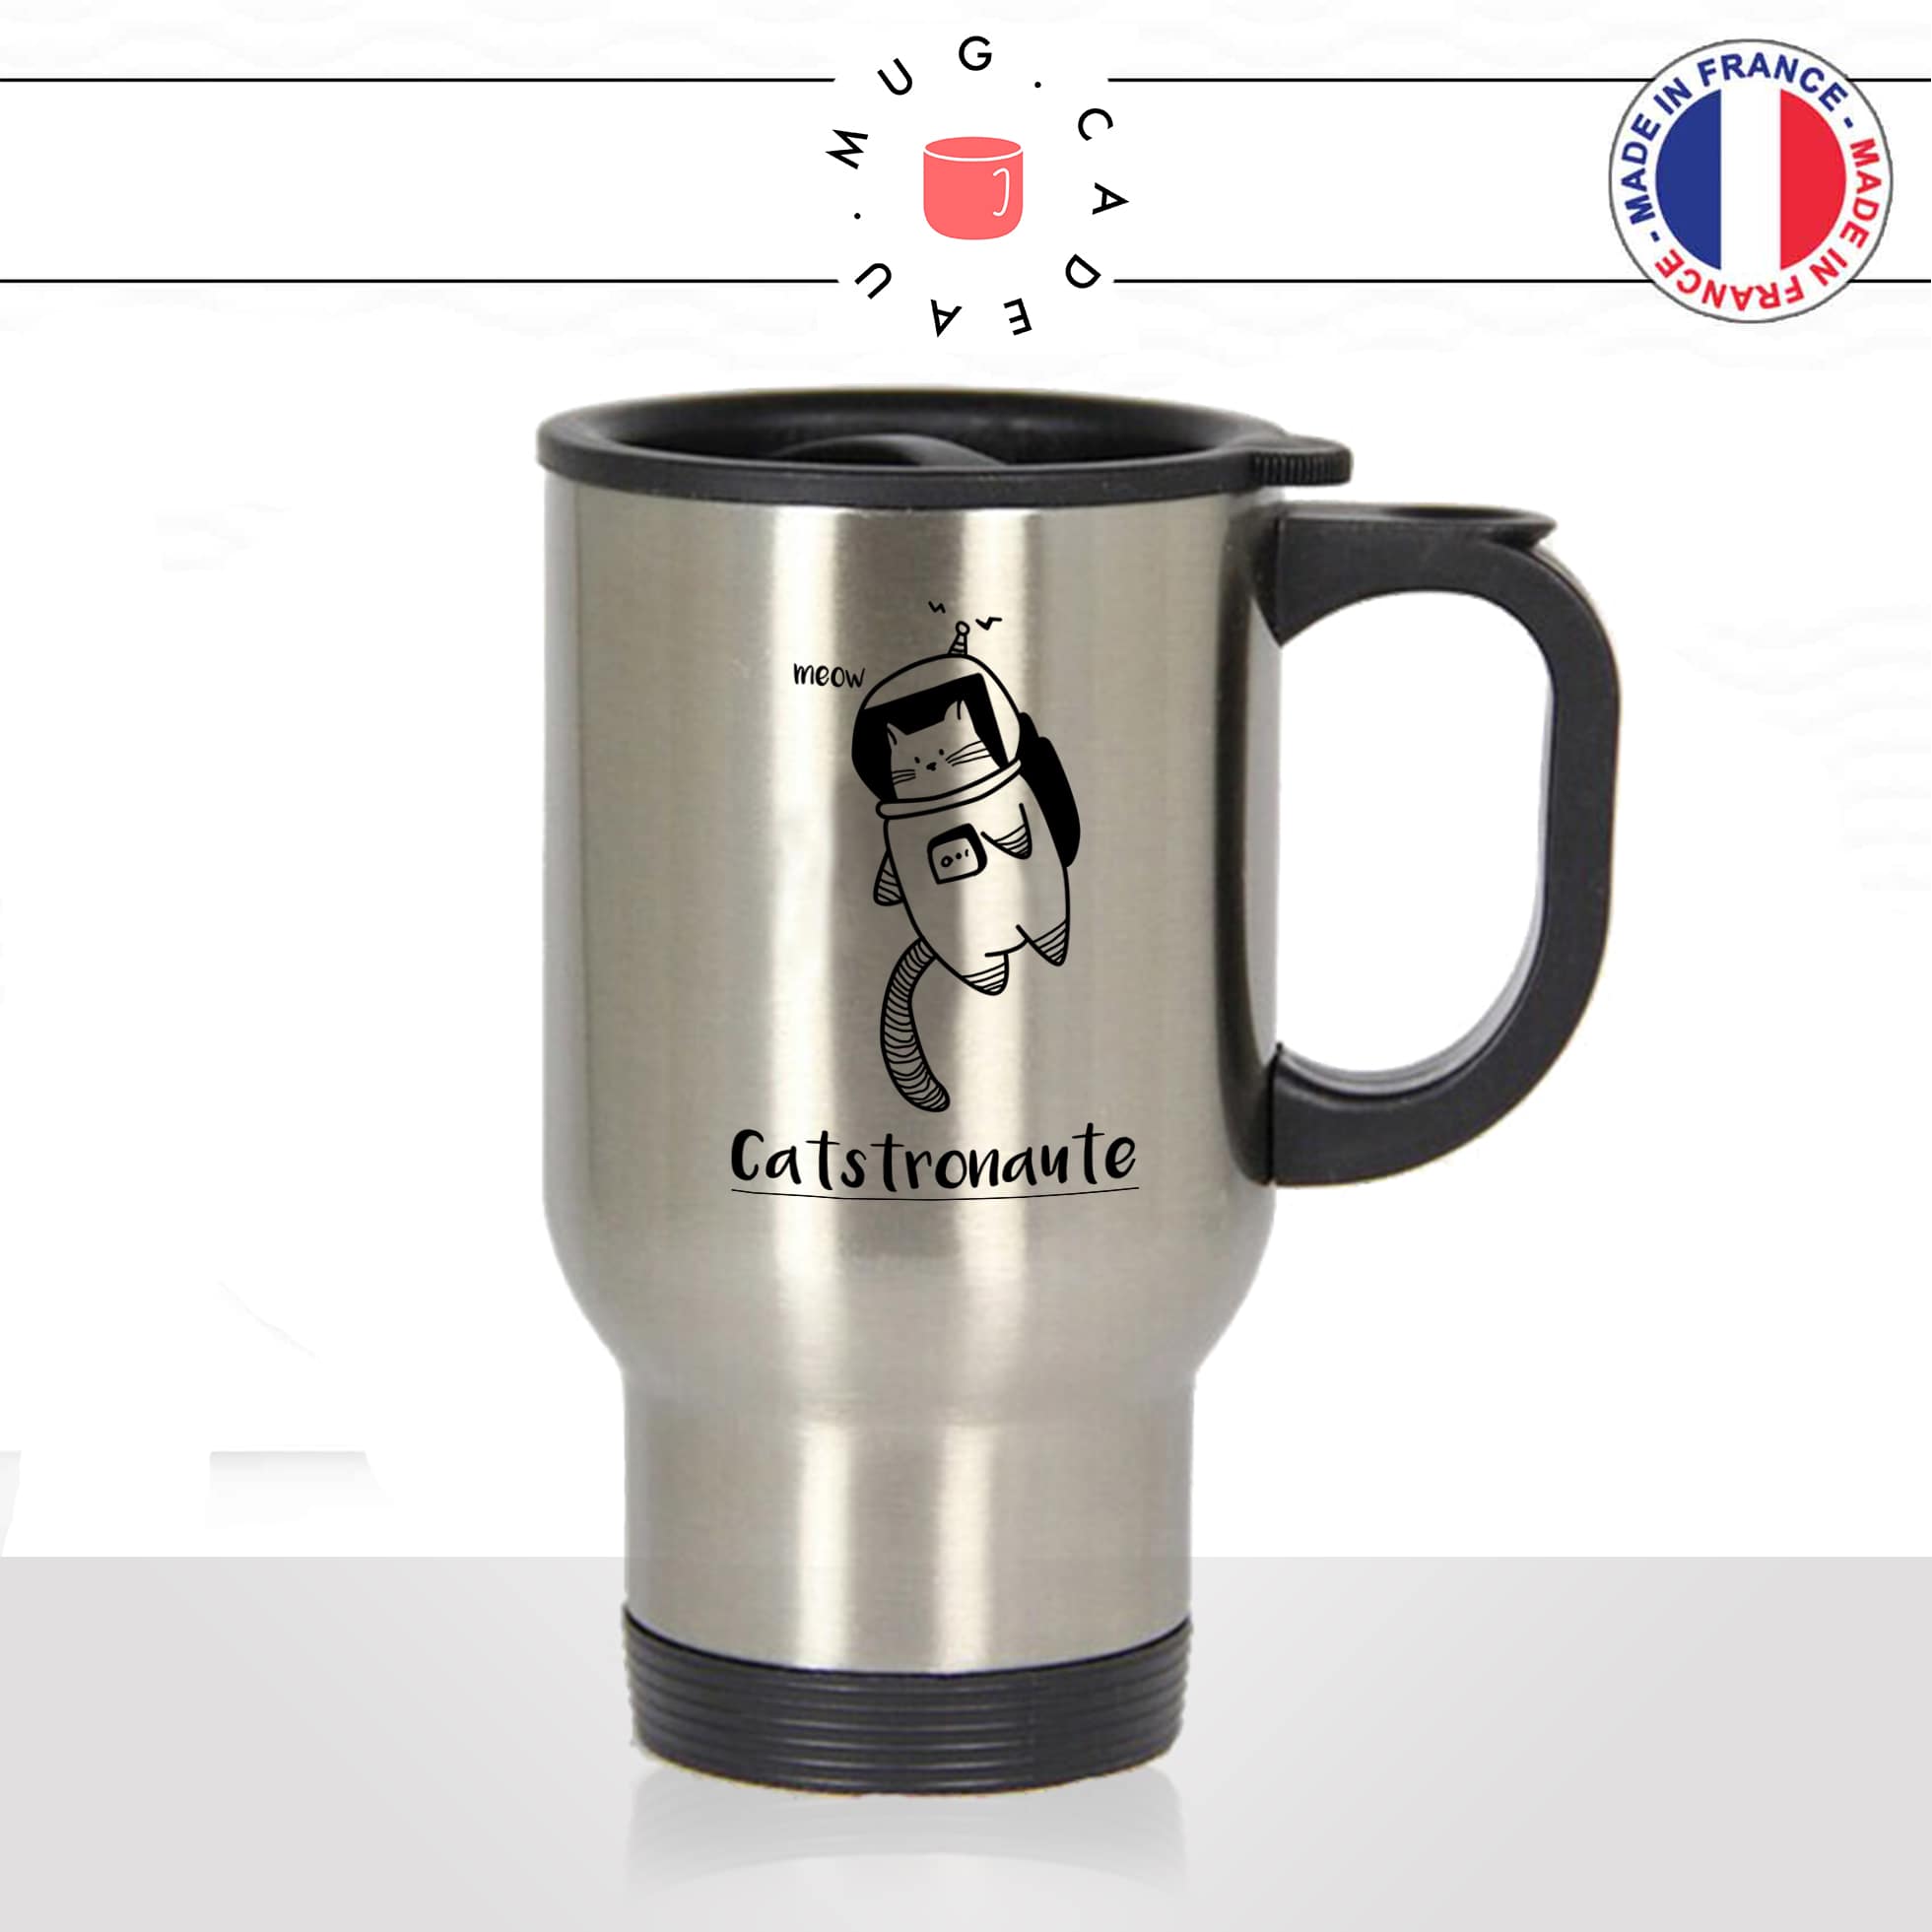 mug-tasse-thermos-de-voyage-café-thé-boisson-animal-animaux-chat-astronaute-meow-dessin-mignon-idée-cadeau-original-fun-cool2-min